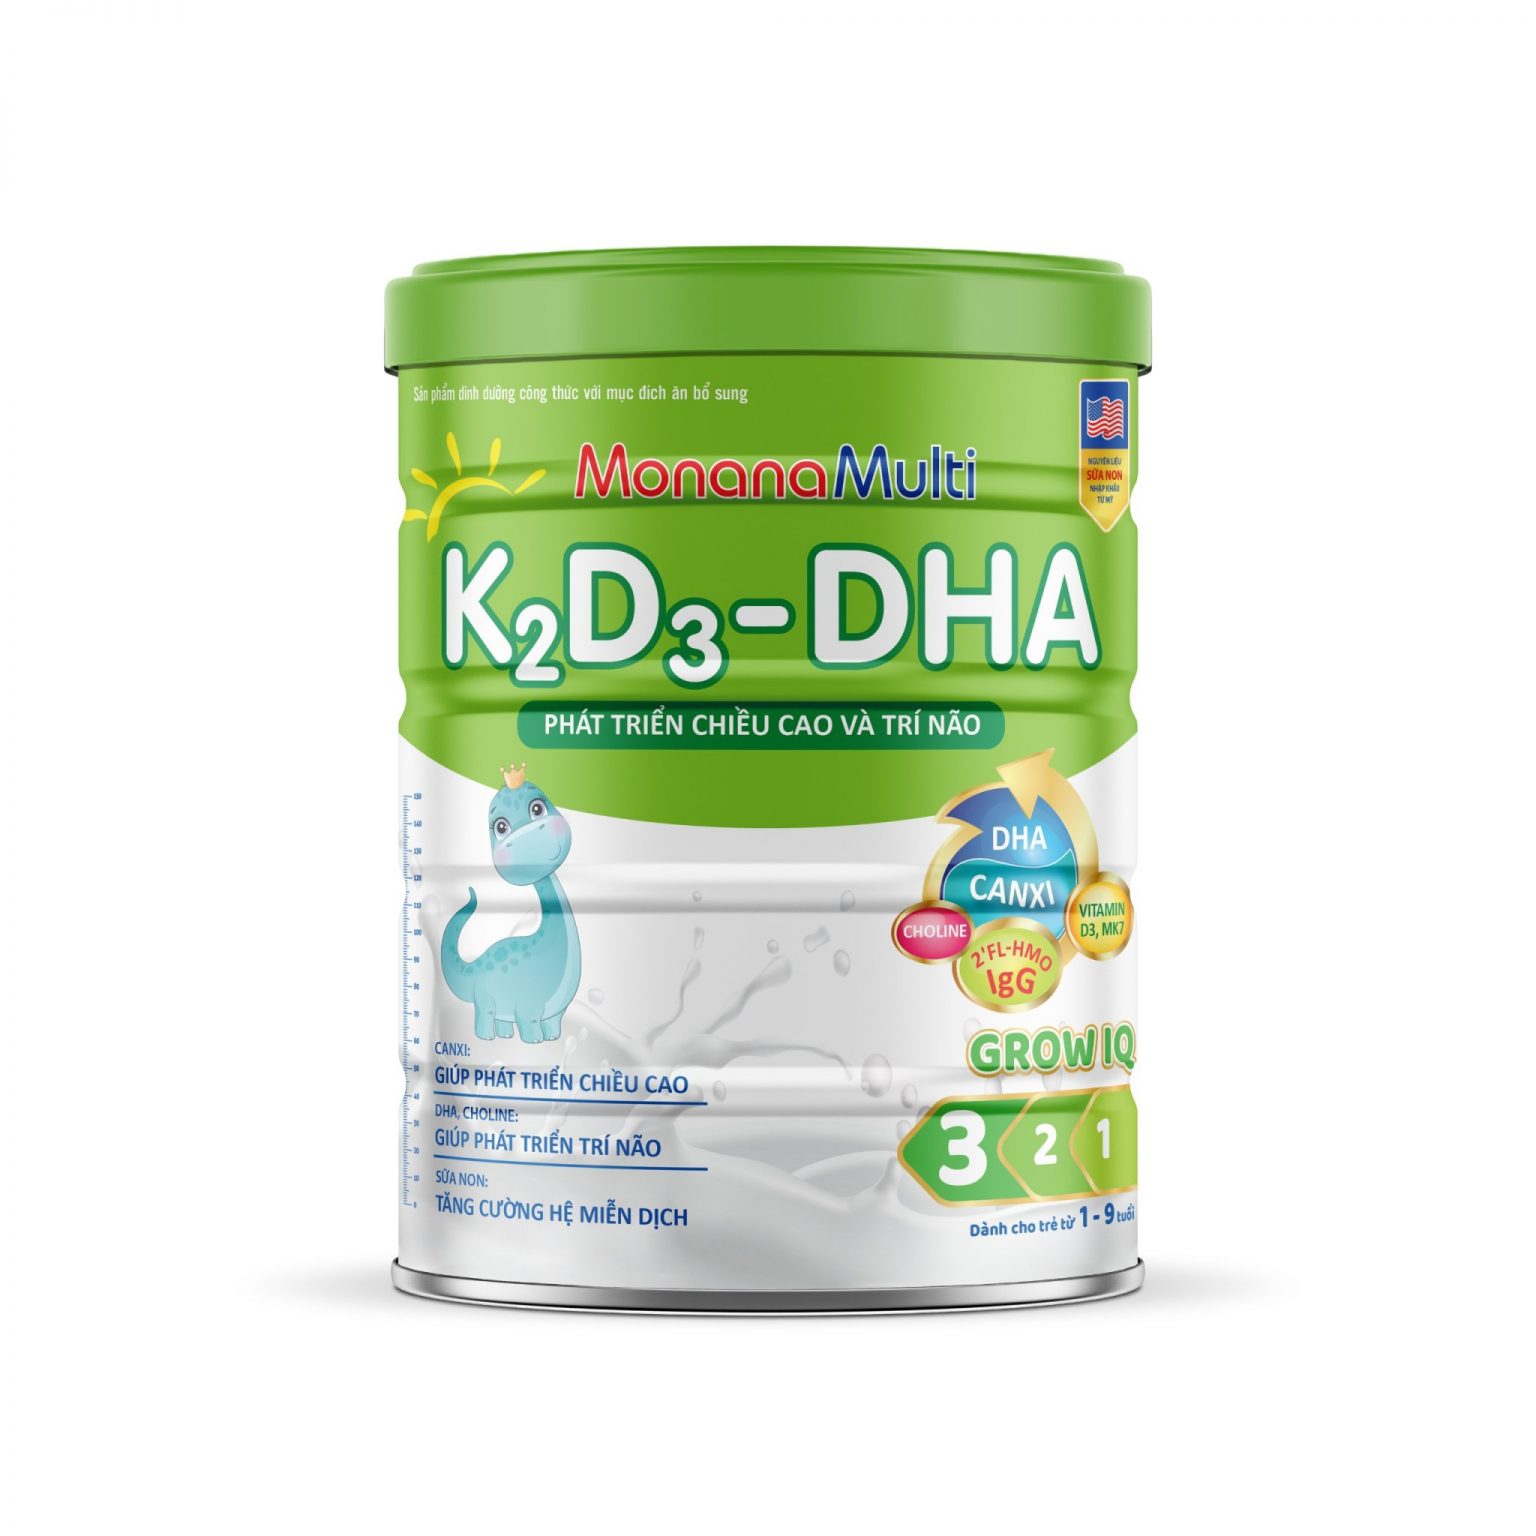 MonanaMulti K2D3-DHA Grow IQ - Giúp Trẻ Phát Triển Chiều Cao Và Trí Não